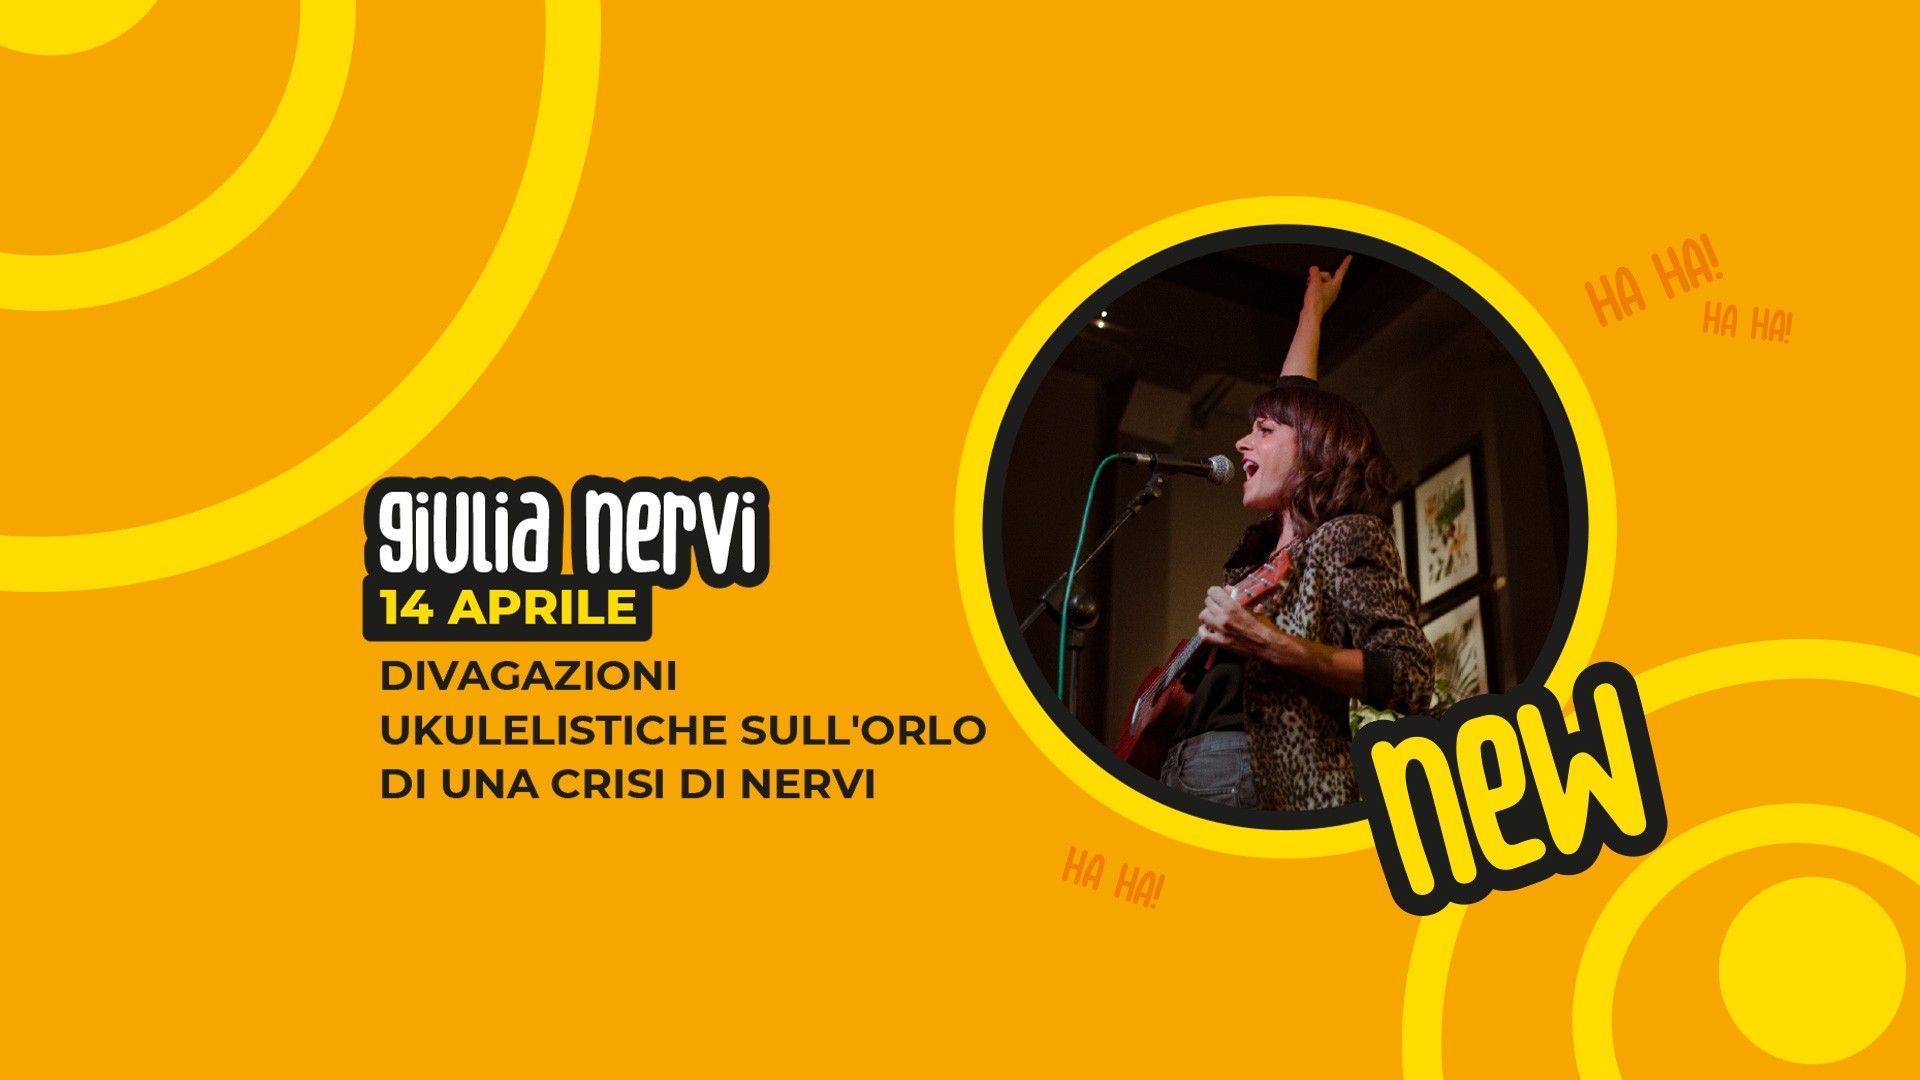 Giulia Nervi - "Divagazioni ukulelistiche sull’orlo di una crisi di Nervi"